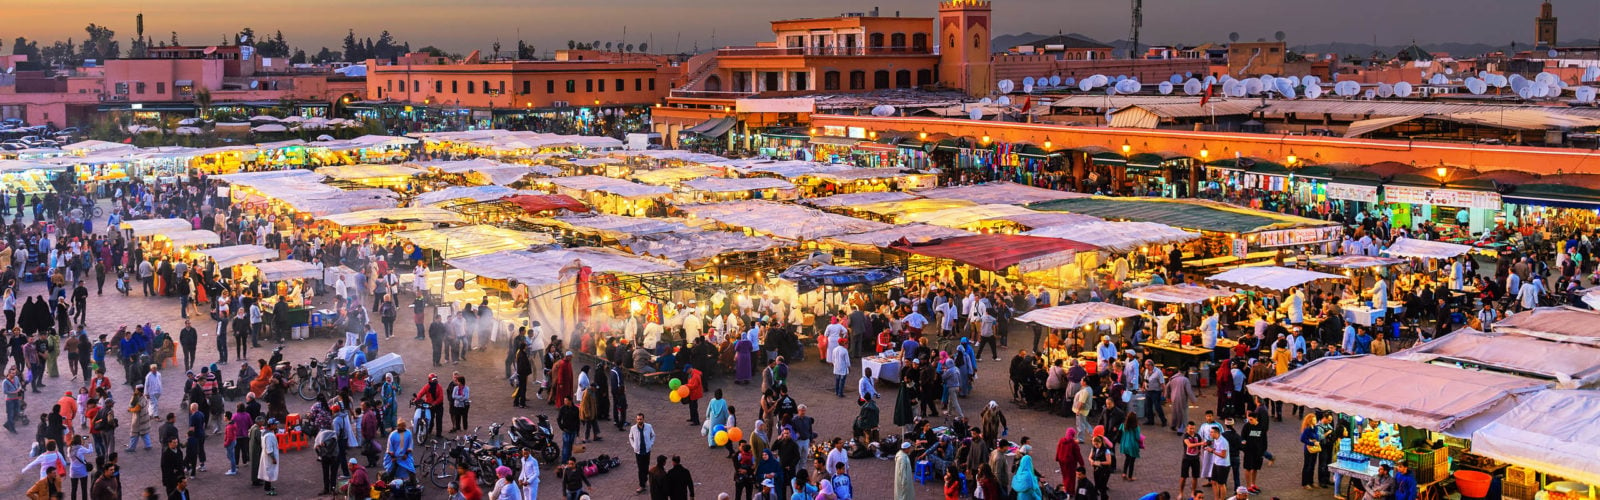 djemaa-el-fna-square-marrakech-morocco